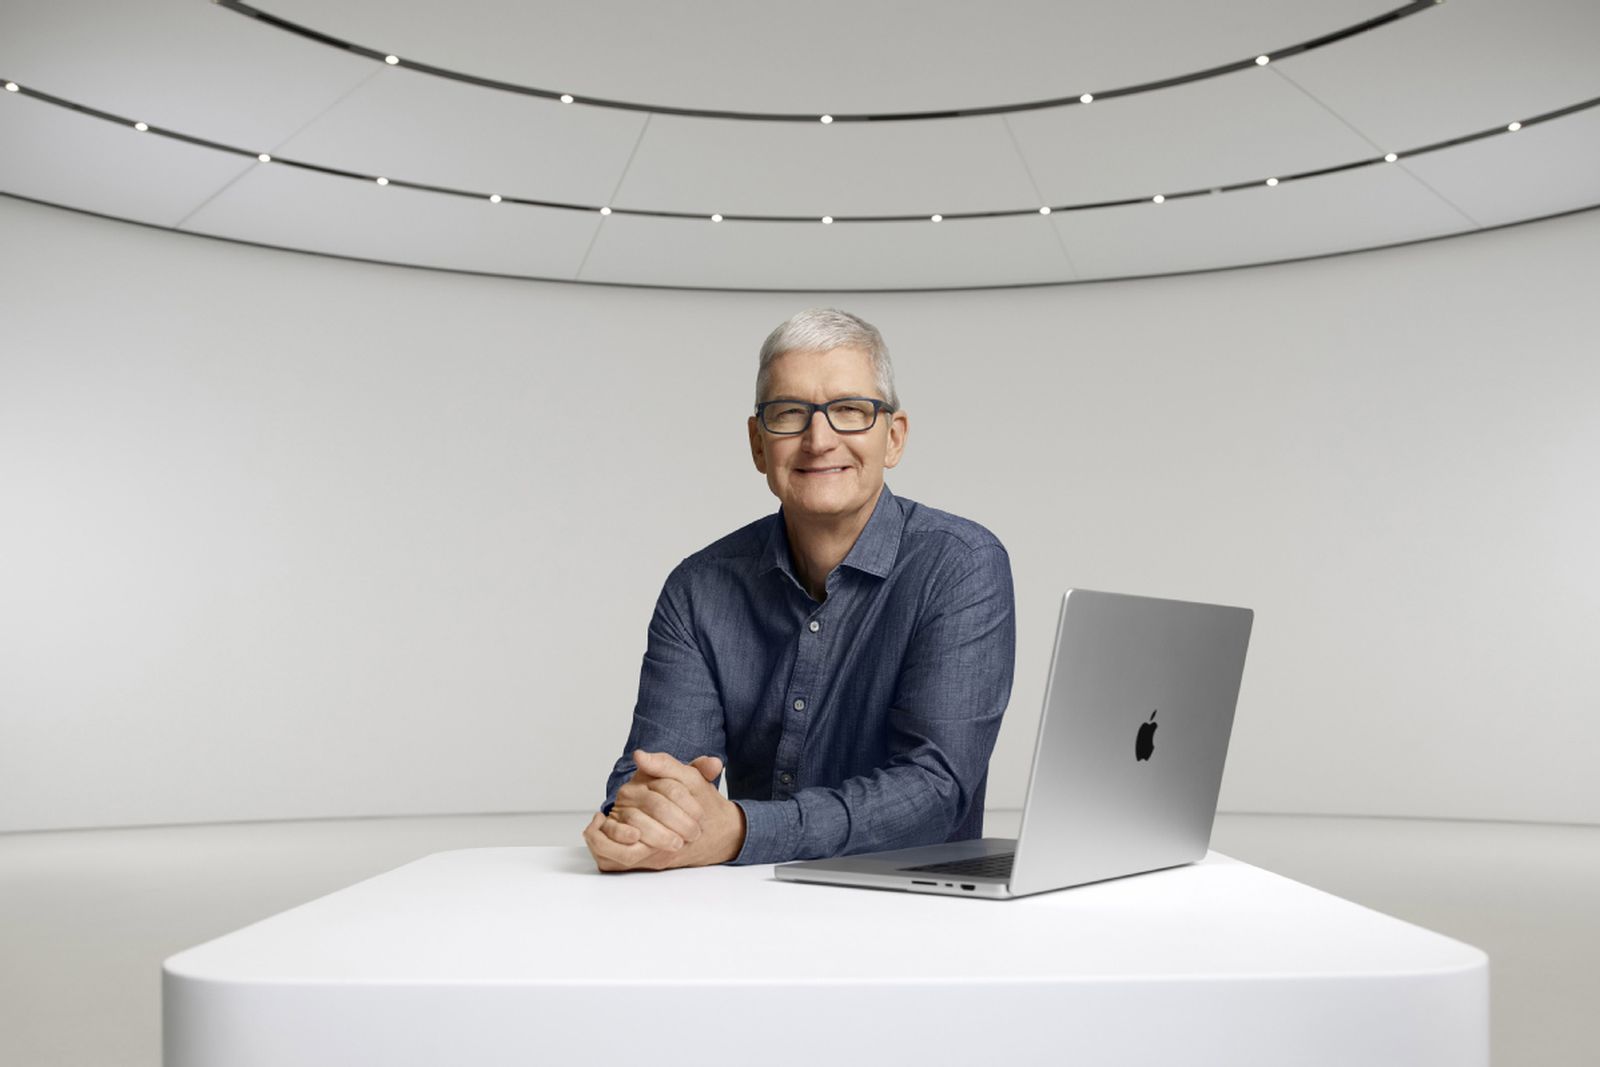 El CEO de Apple, Tim Cook, acepta un recorte salarial sustancial en 2023 después de ganar casi $ 100 millones el año pasado